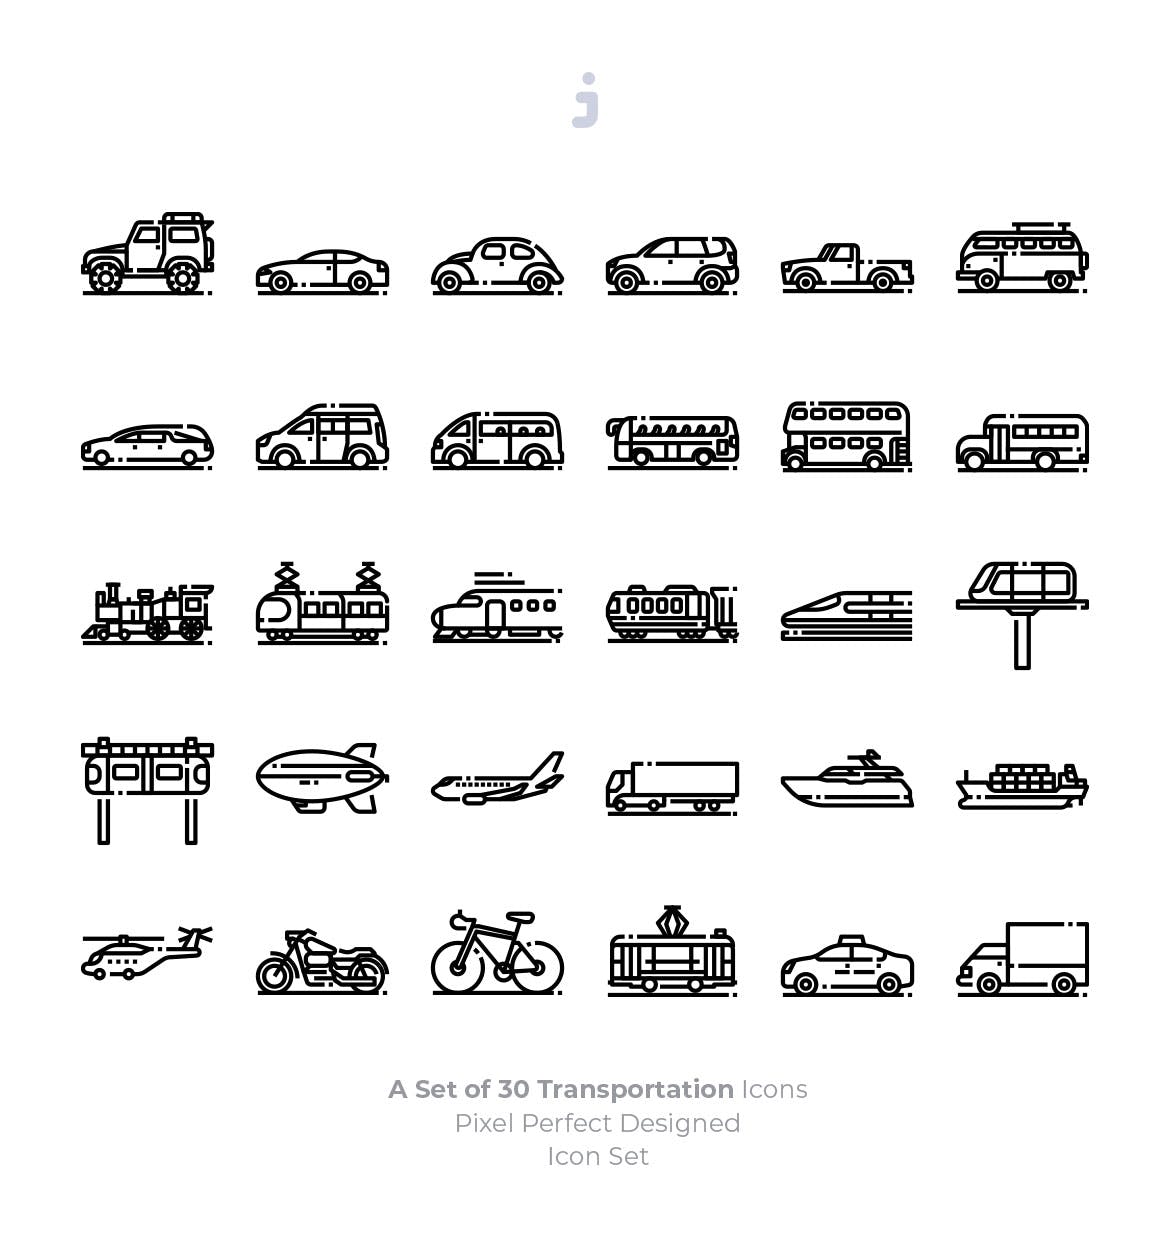 30枚现代交通工具矢量素材库精选图标 30 Transportation Icons插图(2)